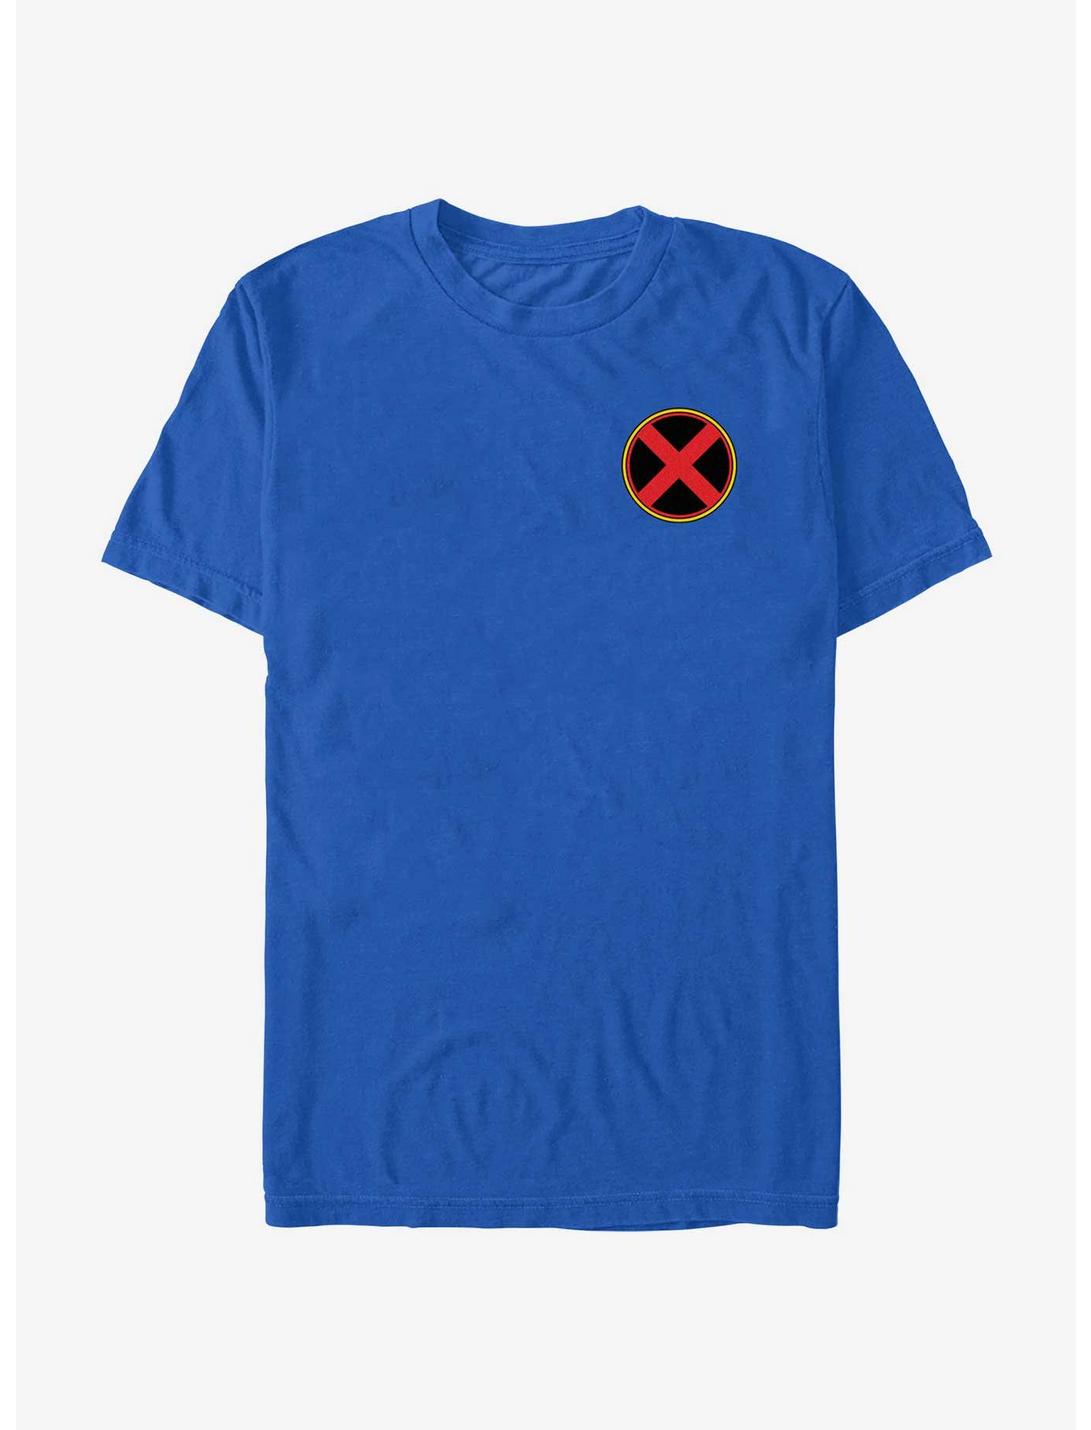 Marvel X-Men Xavier Institute Chest Logo T-Shirt, ROYAL, hi-res